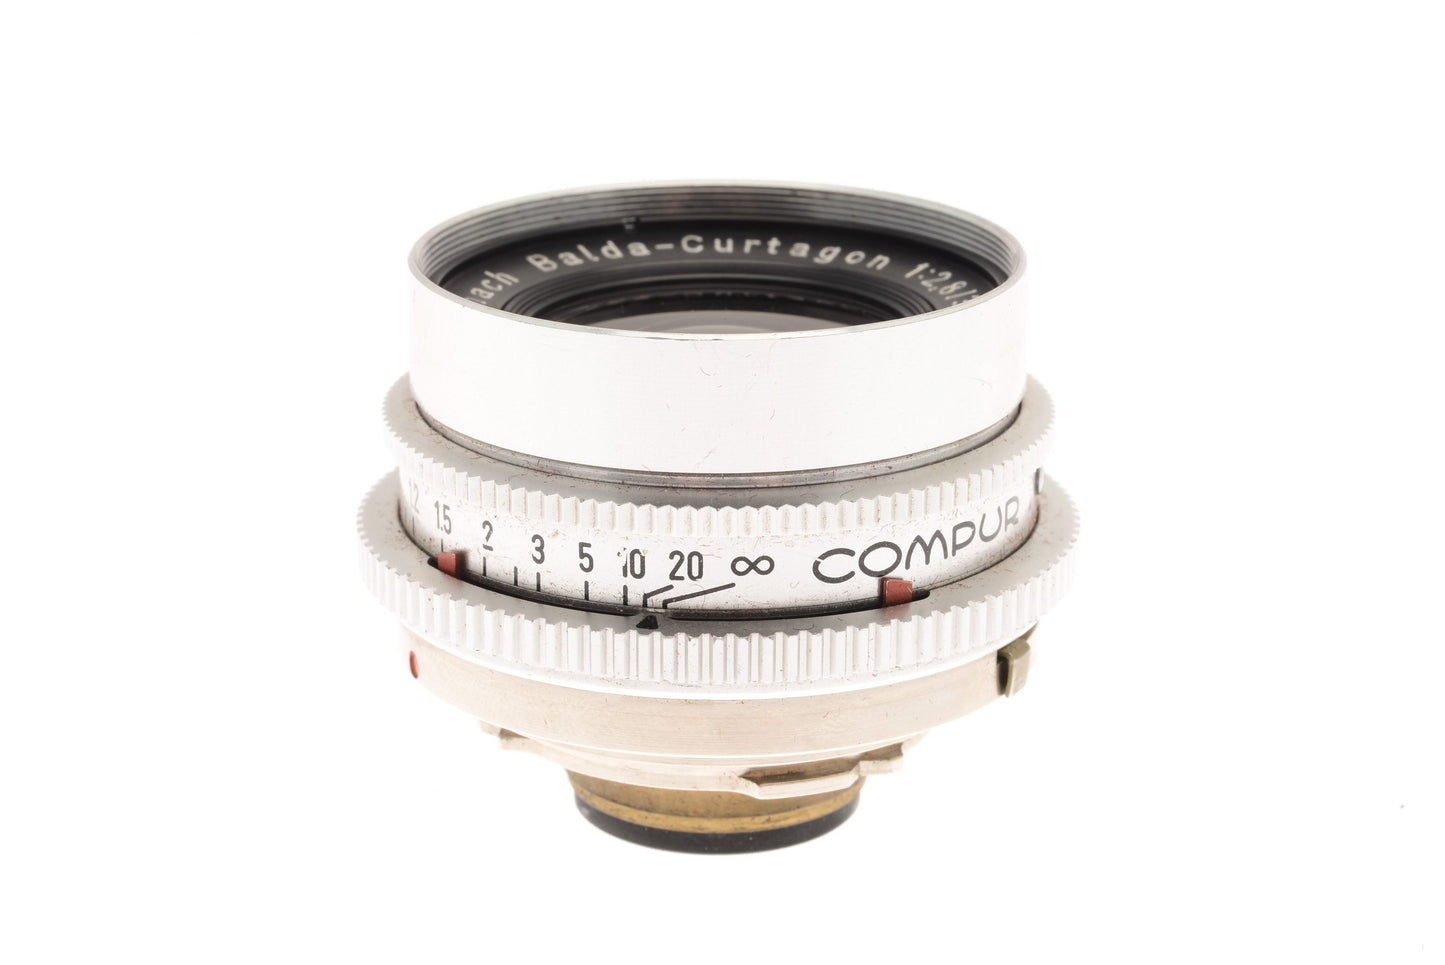 Schneider-Kreuznach 35mm f2.8 Balda-Curtagon - Lens